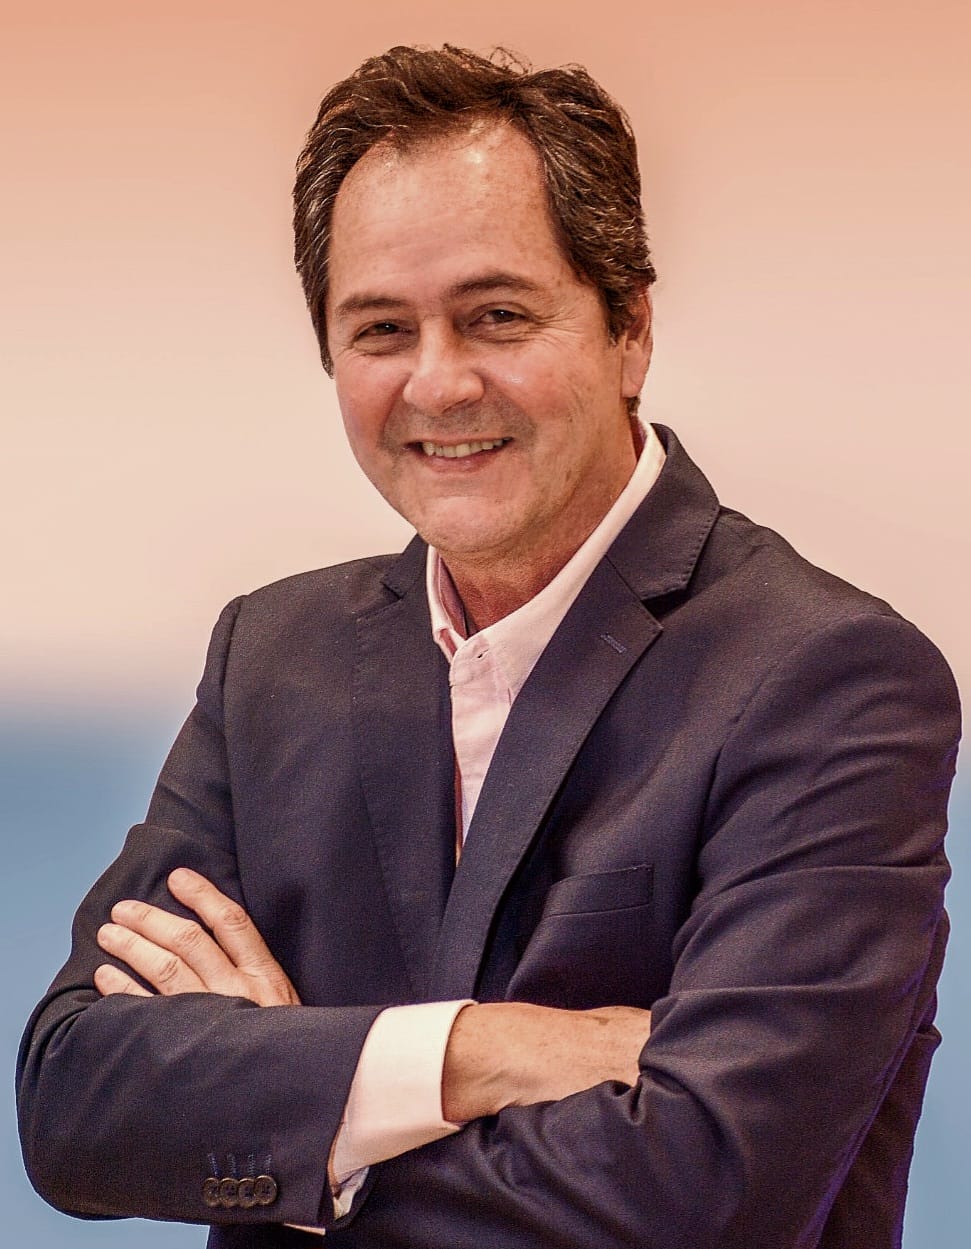 Jorge Antonio Aquino Lopes